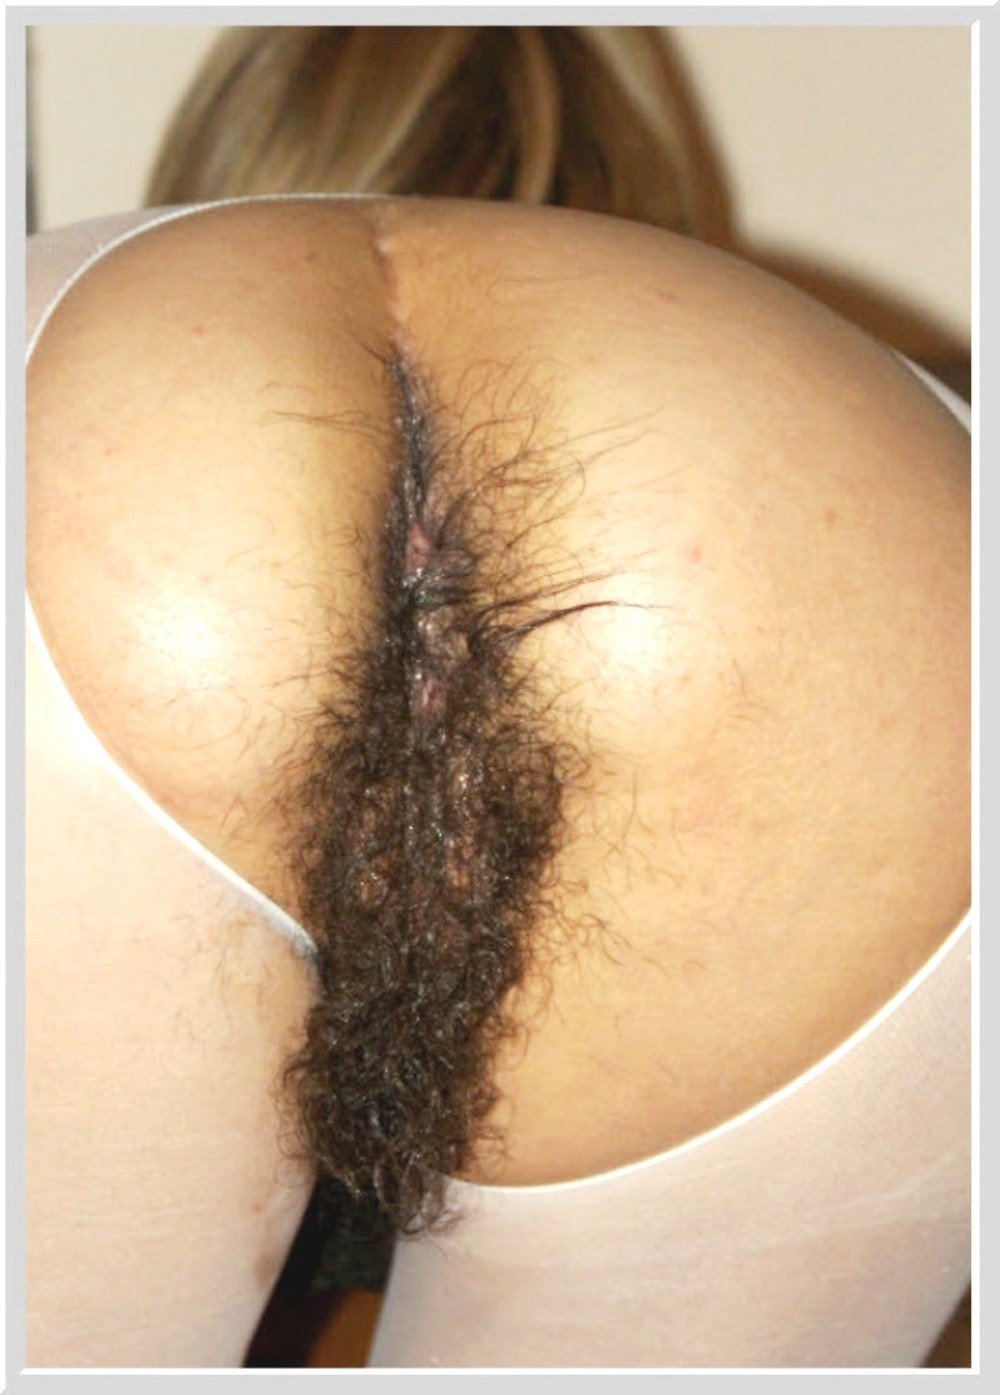 женская волосатая жопа порно фото фото 106